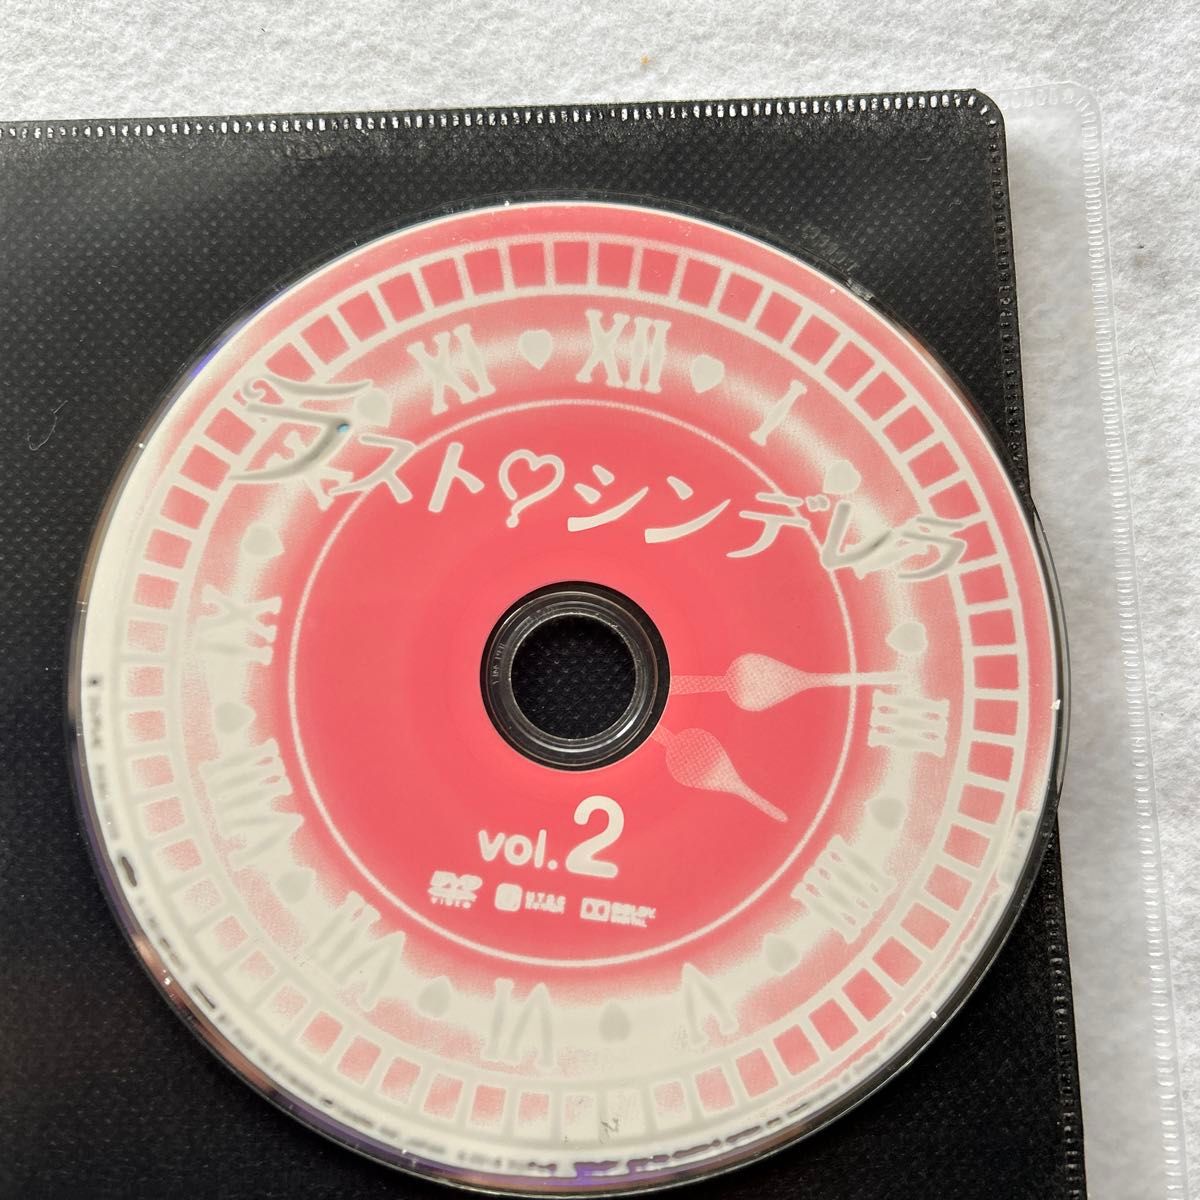 ラスト シンデレラ 全6巻 レンタル版DVD